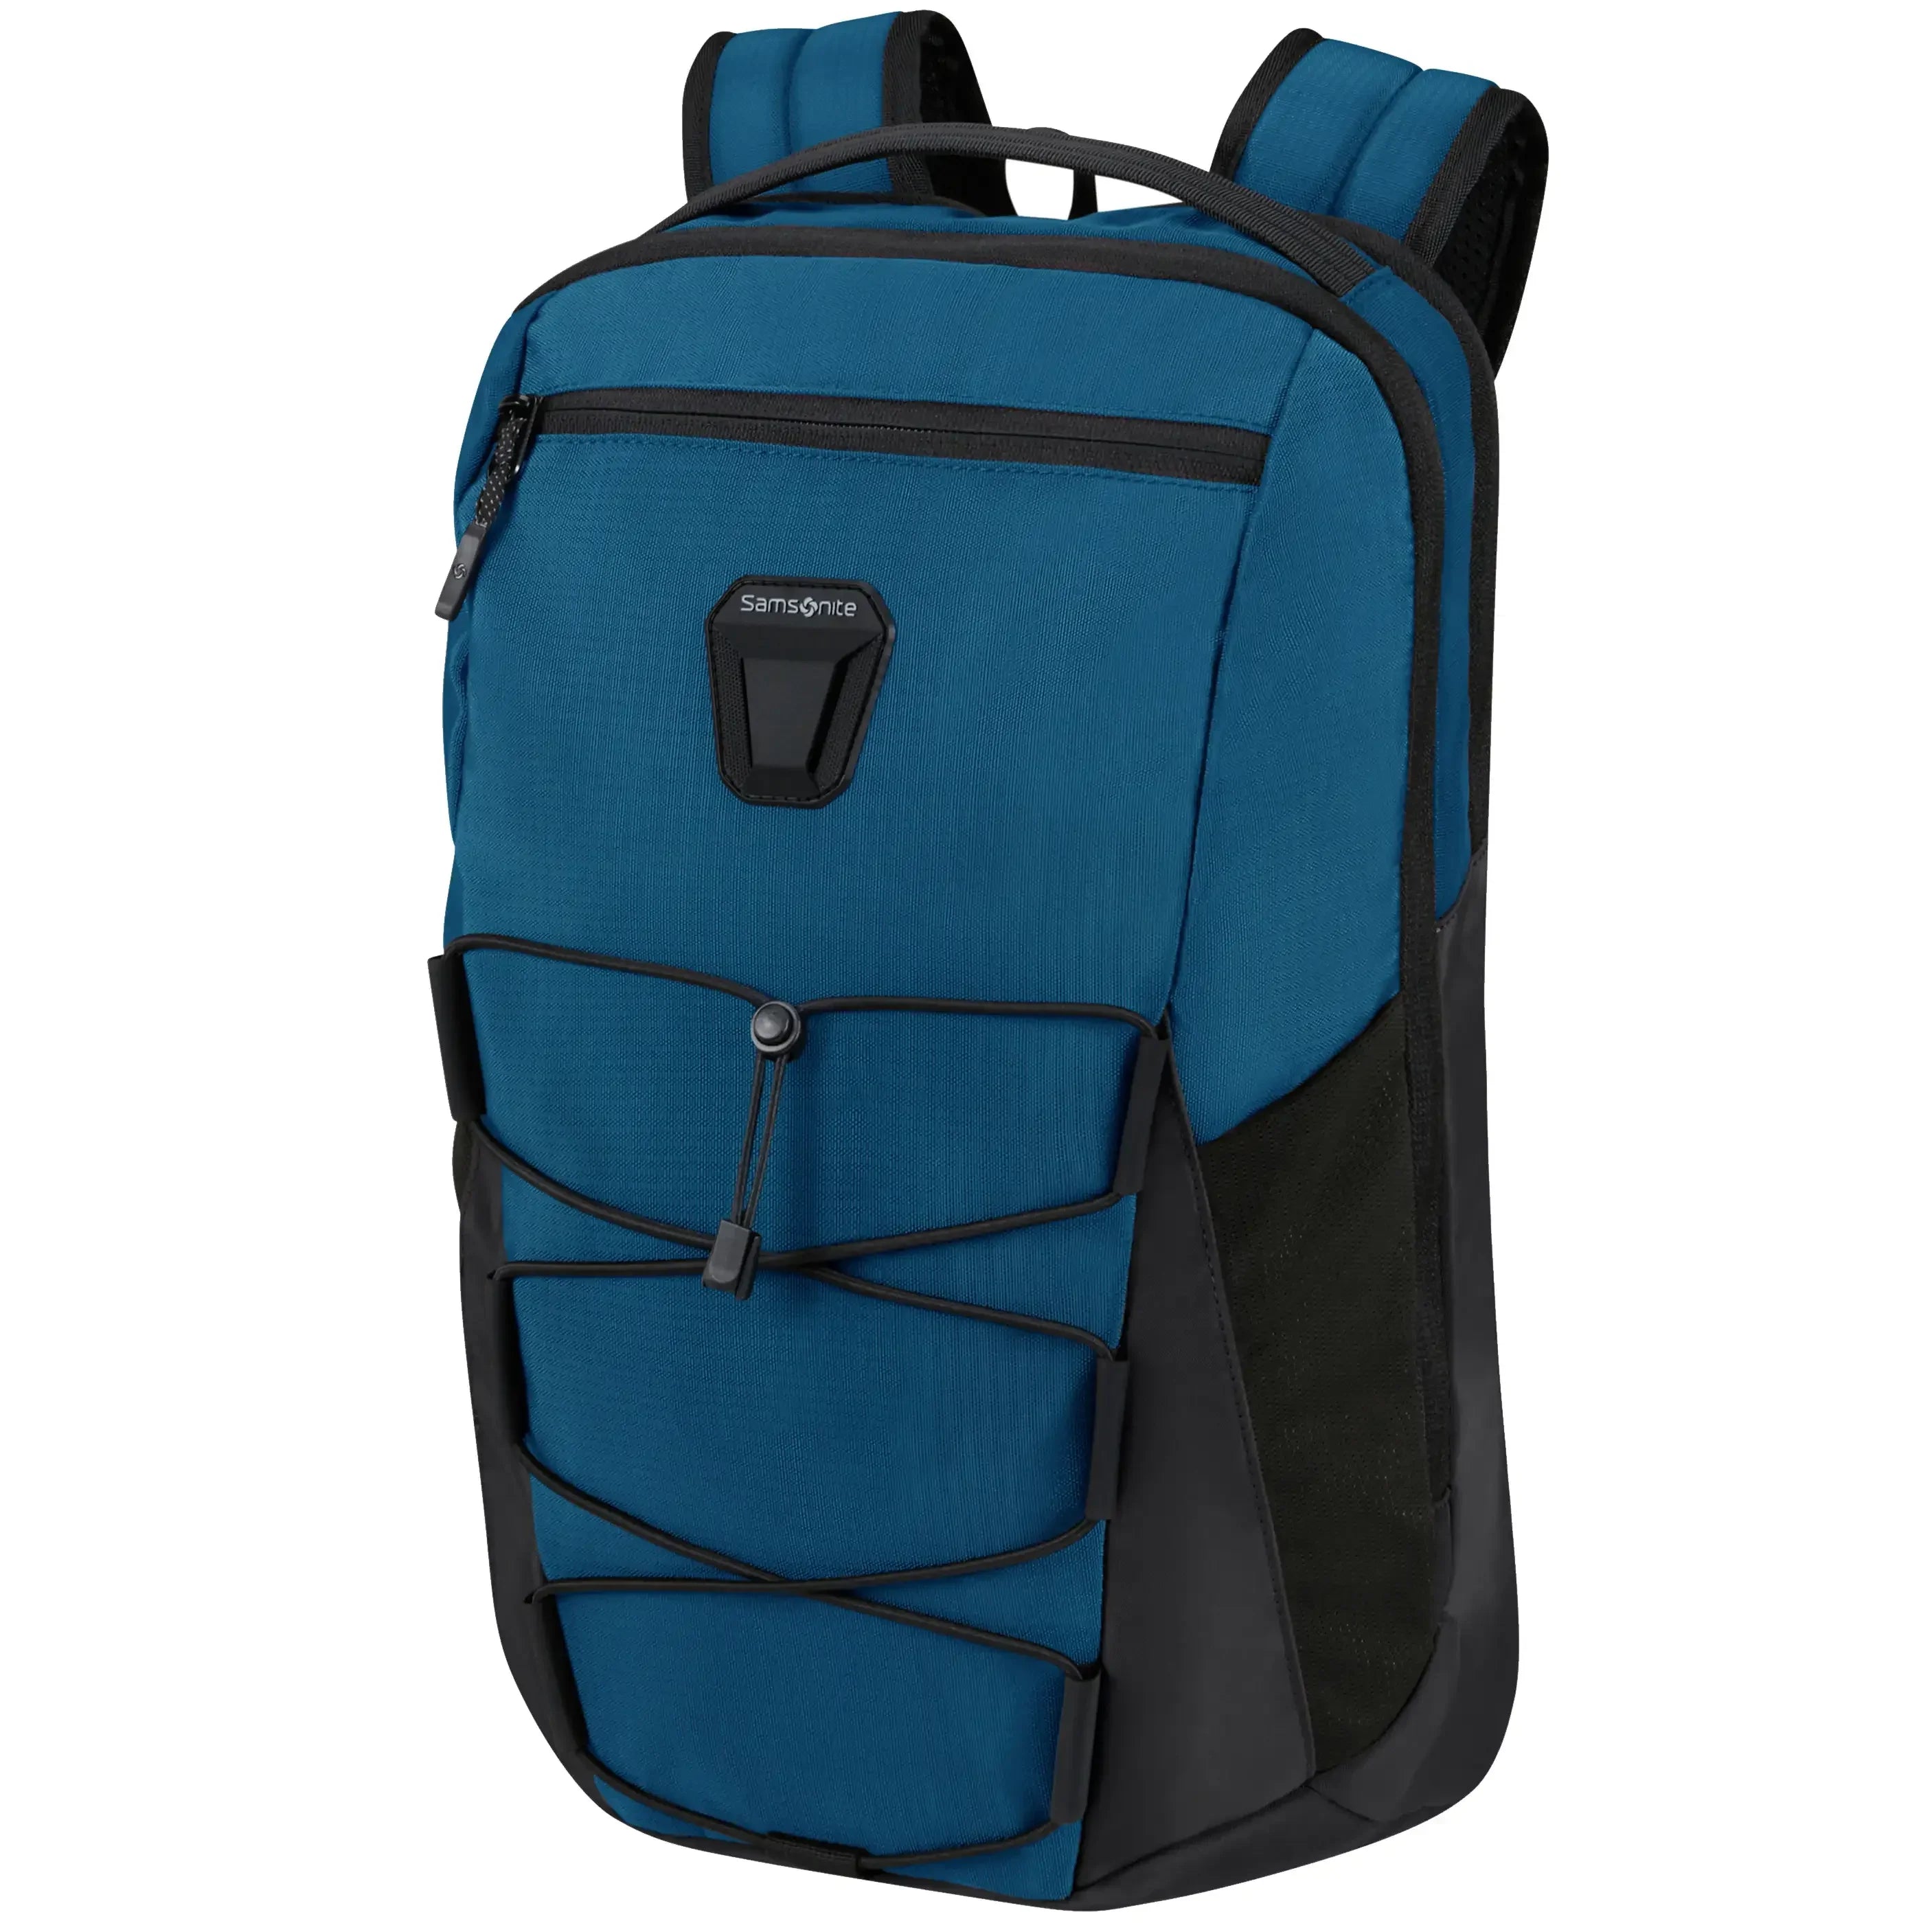 Samsonite Dye-Namic Backpack S 42 cm - blue